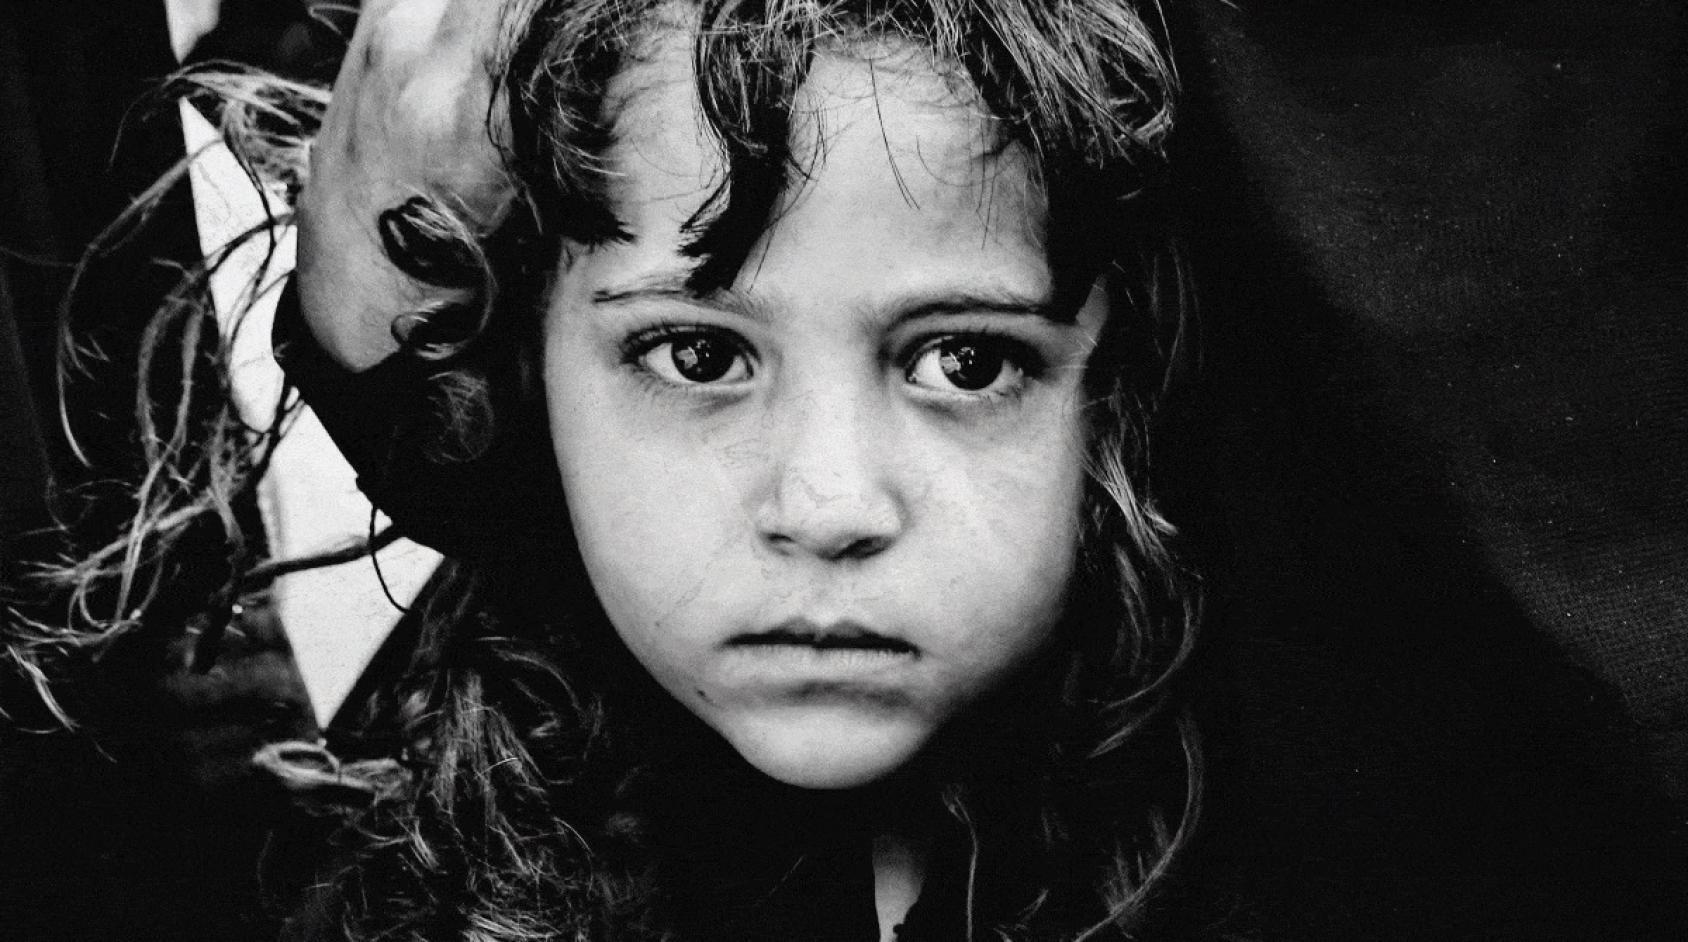 Imagen de primer plano, en blanco y negro, de una pequeña niña yemení.